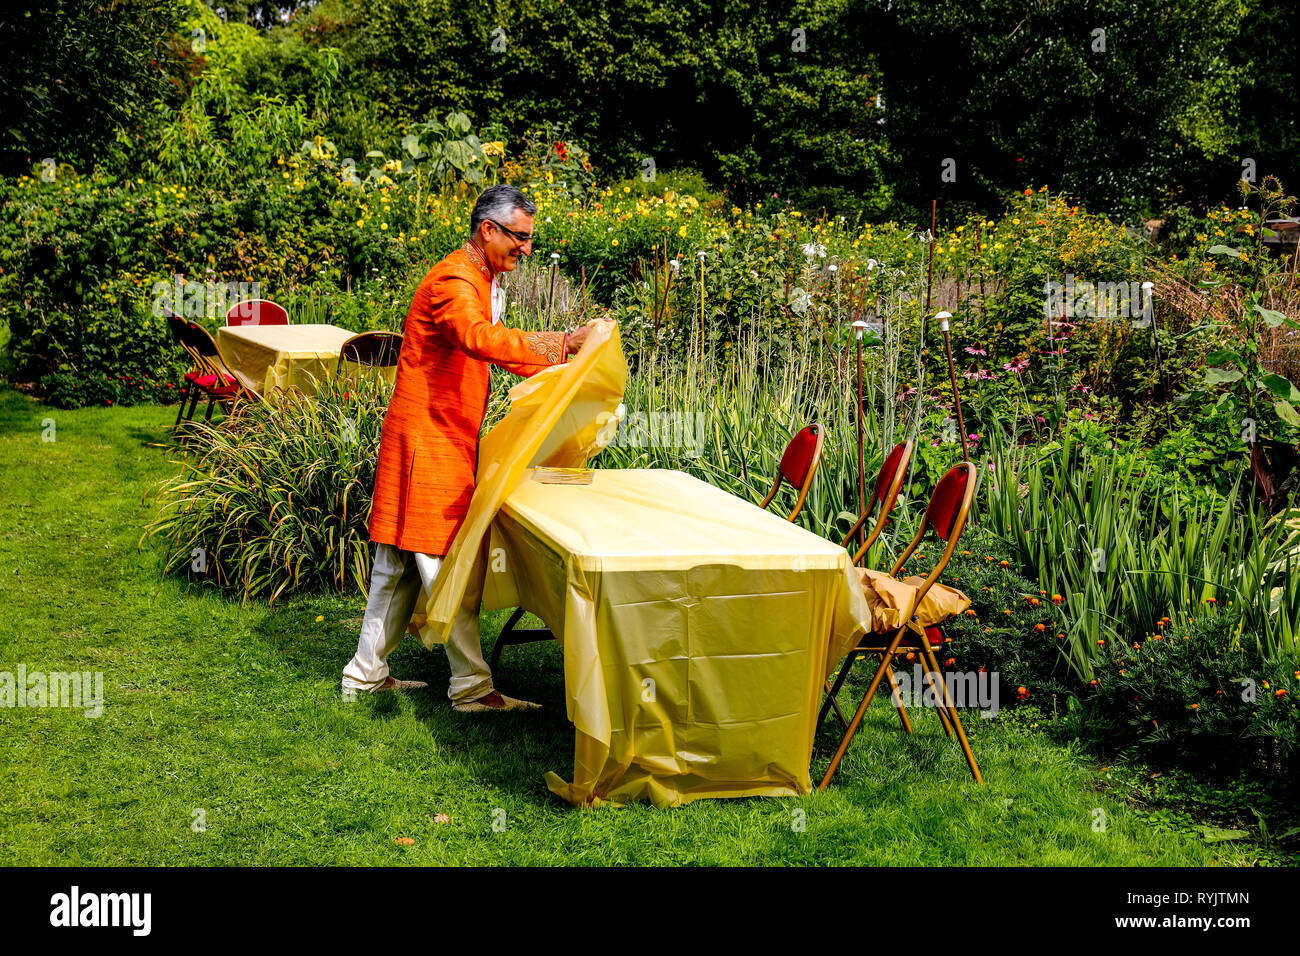 Volontario che stabilisce una tavola per gli ospiti nel giardino fiorito a Bhaktivedanta manor durante Janmashtami festival indù, Watford, Regno Unito Foto Stock